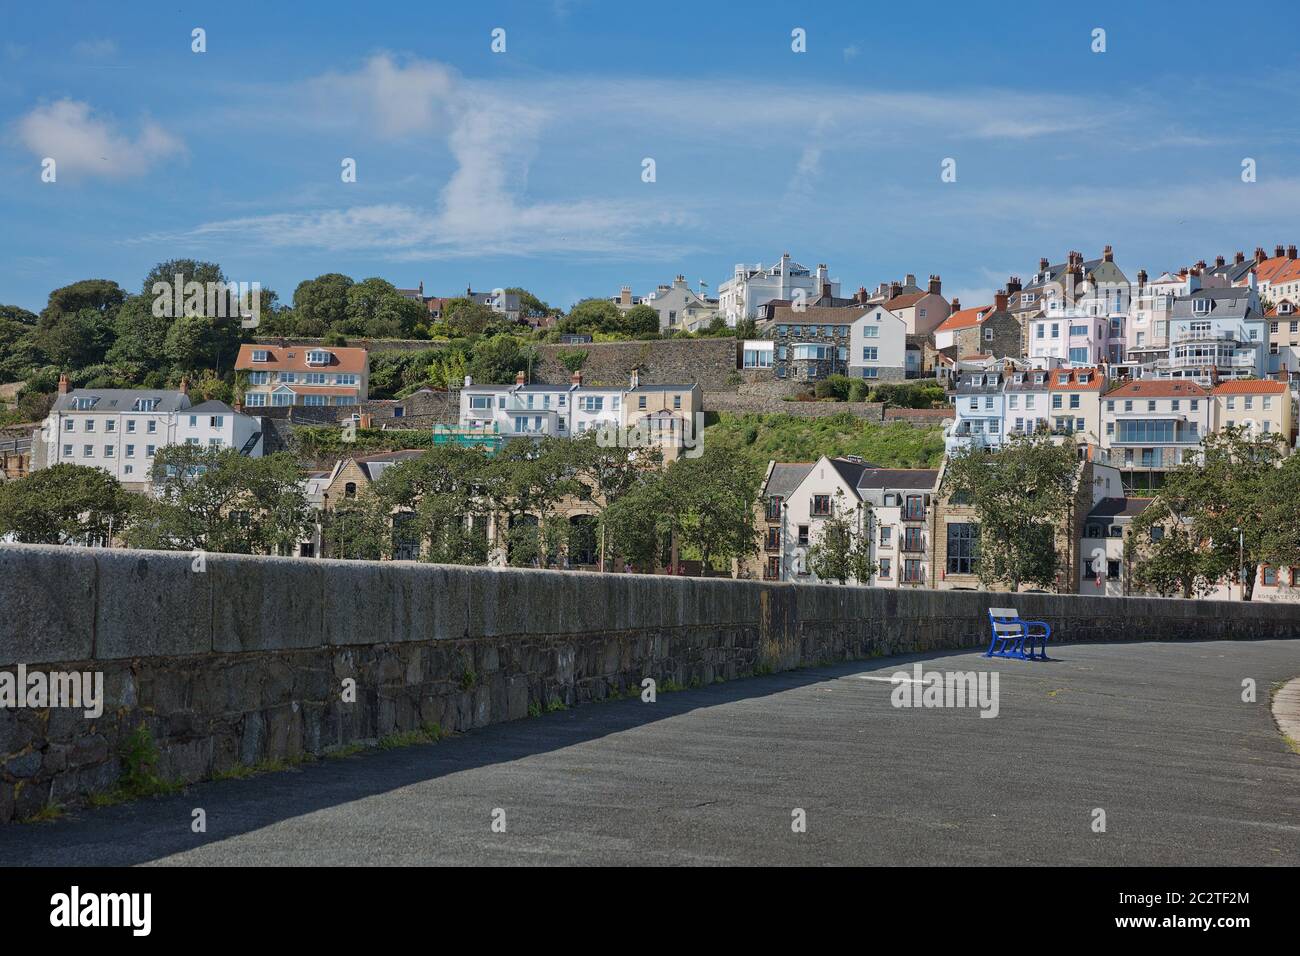 Vista panoramica di una baia nel porto di San Pietro a Guernsey, Isole del canale, Regno Unito Foto Stock